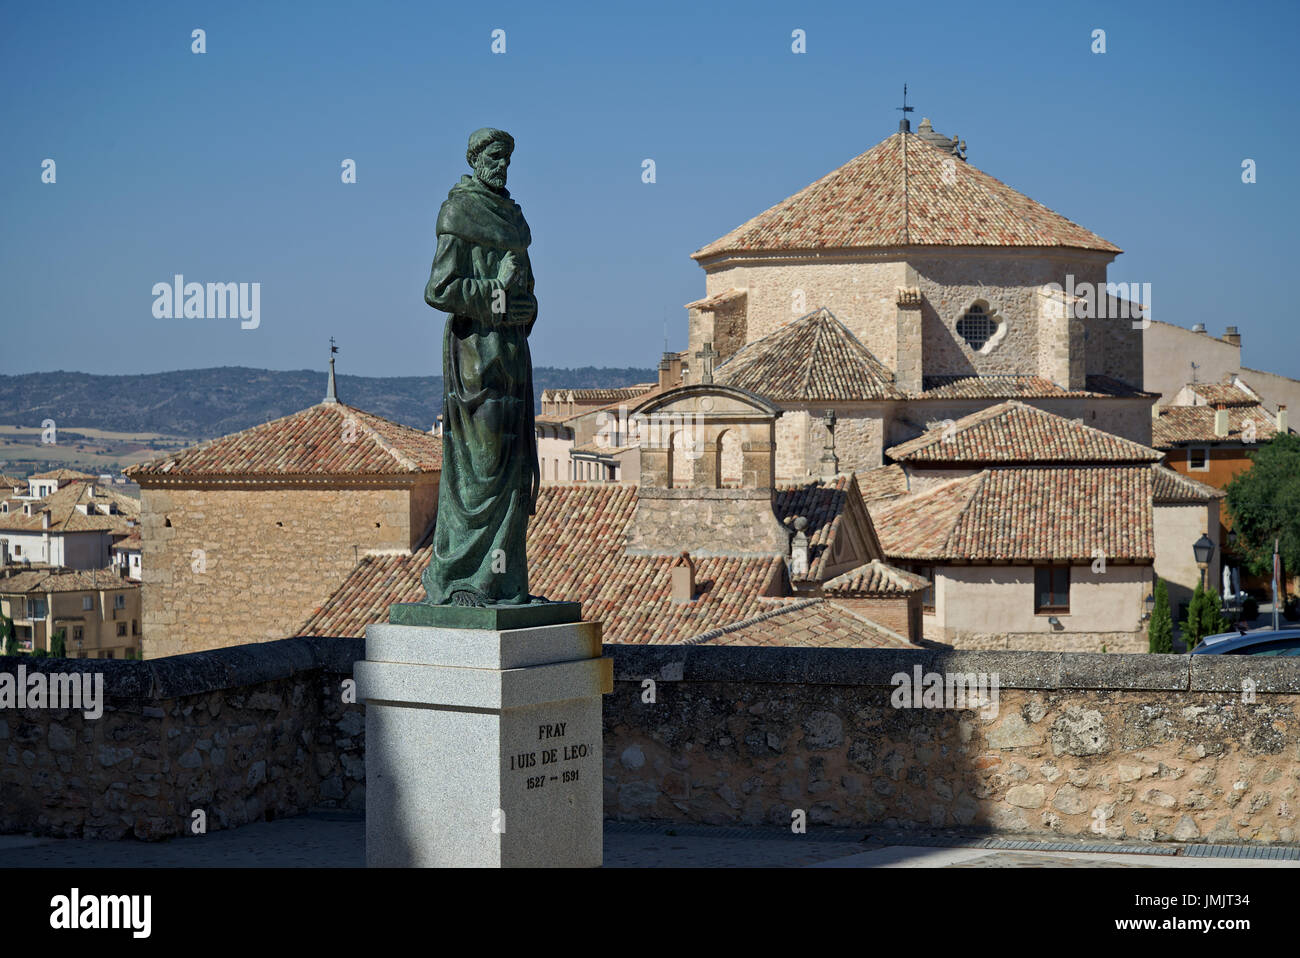 La statua di Fray Luis de Leon realizzati in bronzo dello scultore Javier Barrios con la chiesa di San Pedro in background. Cuenca, Castilla La Mancha Spagna. Foto Stock